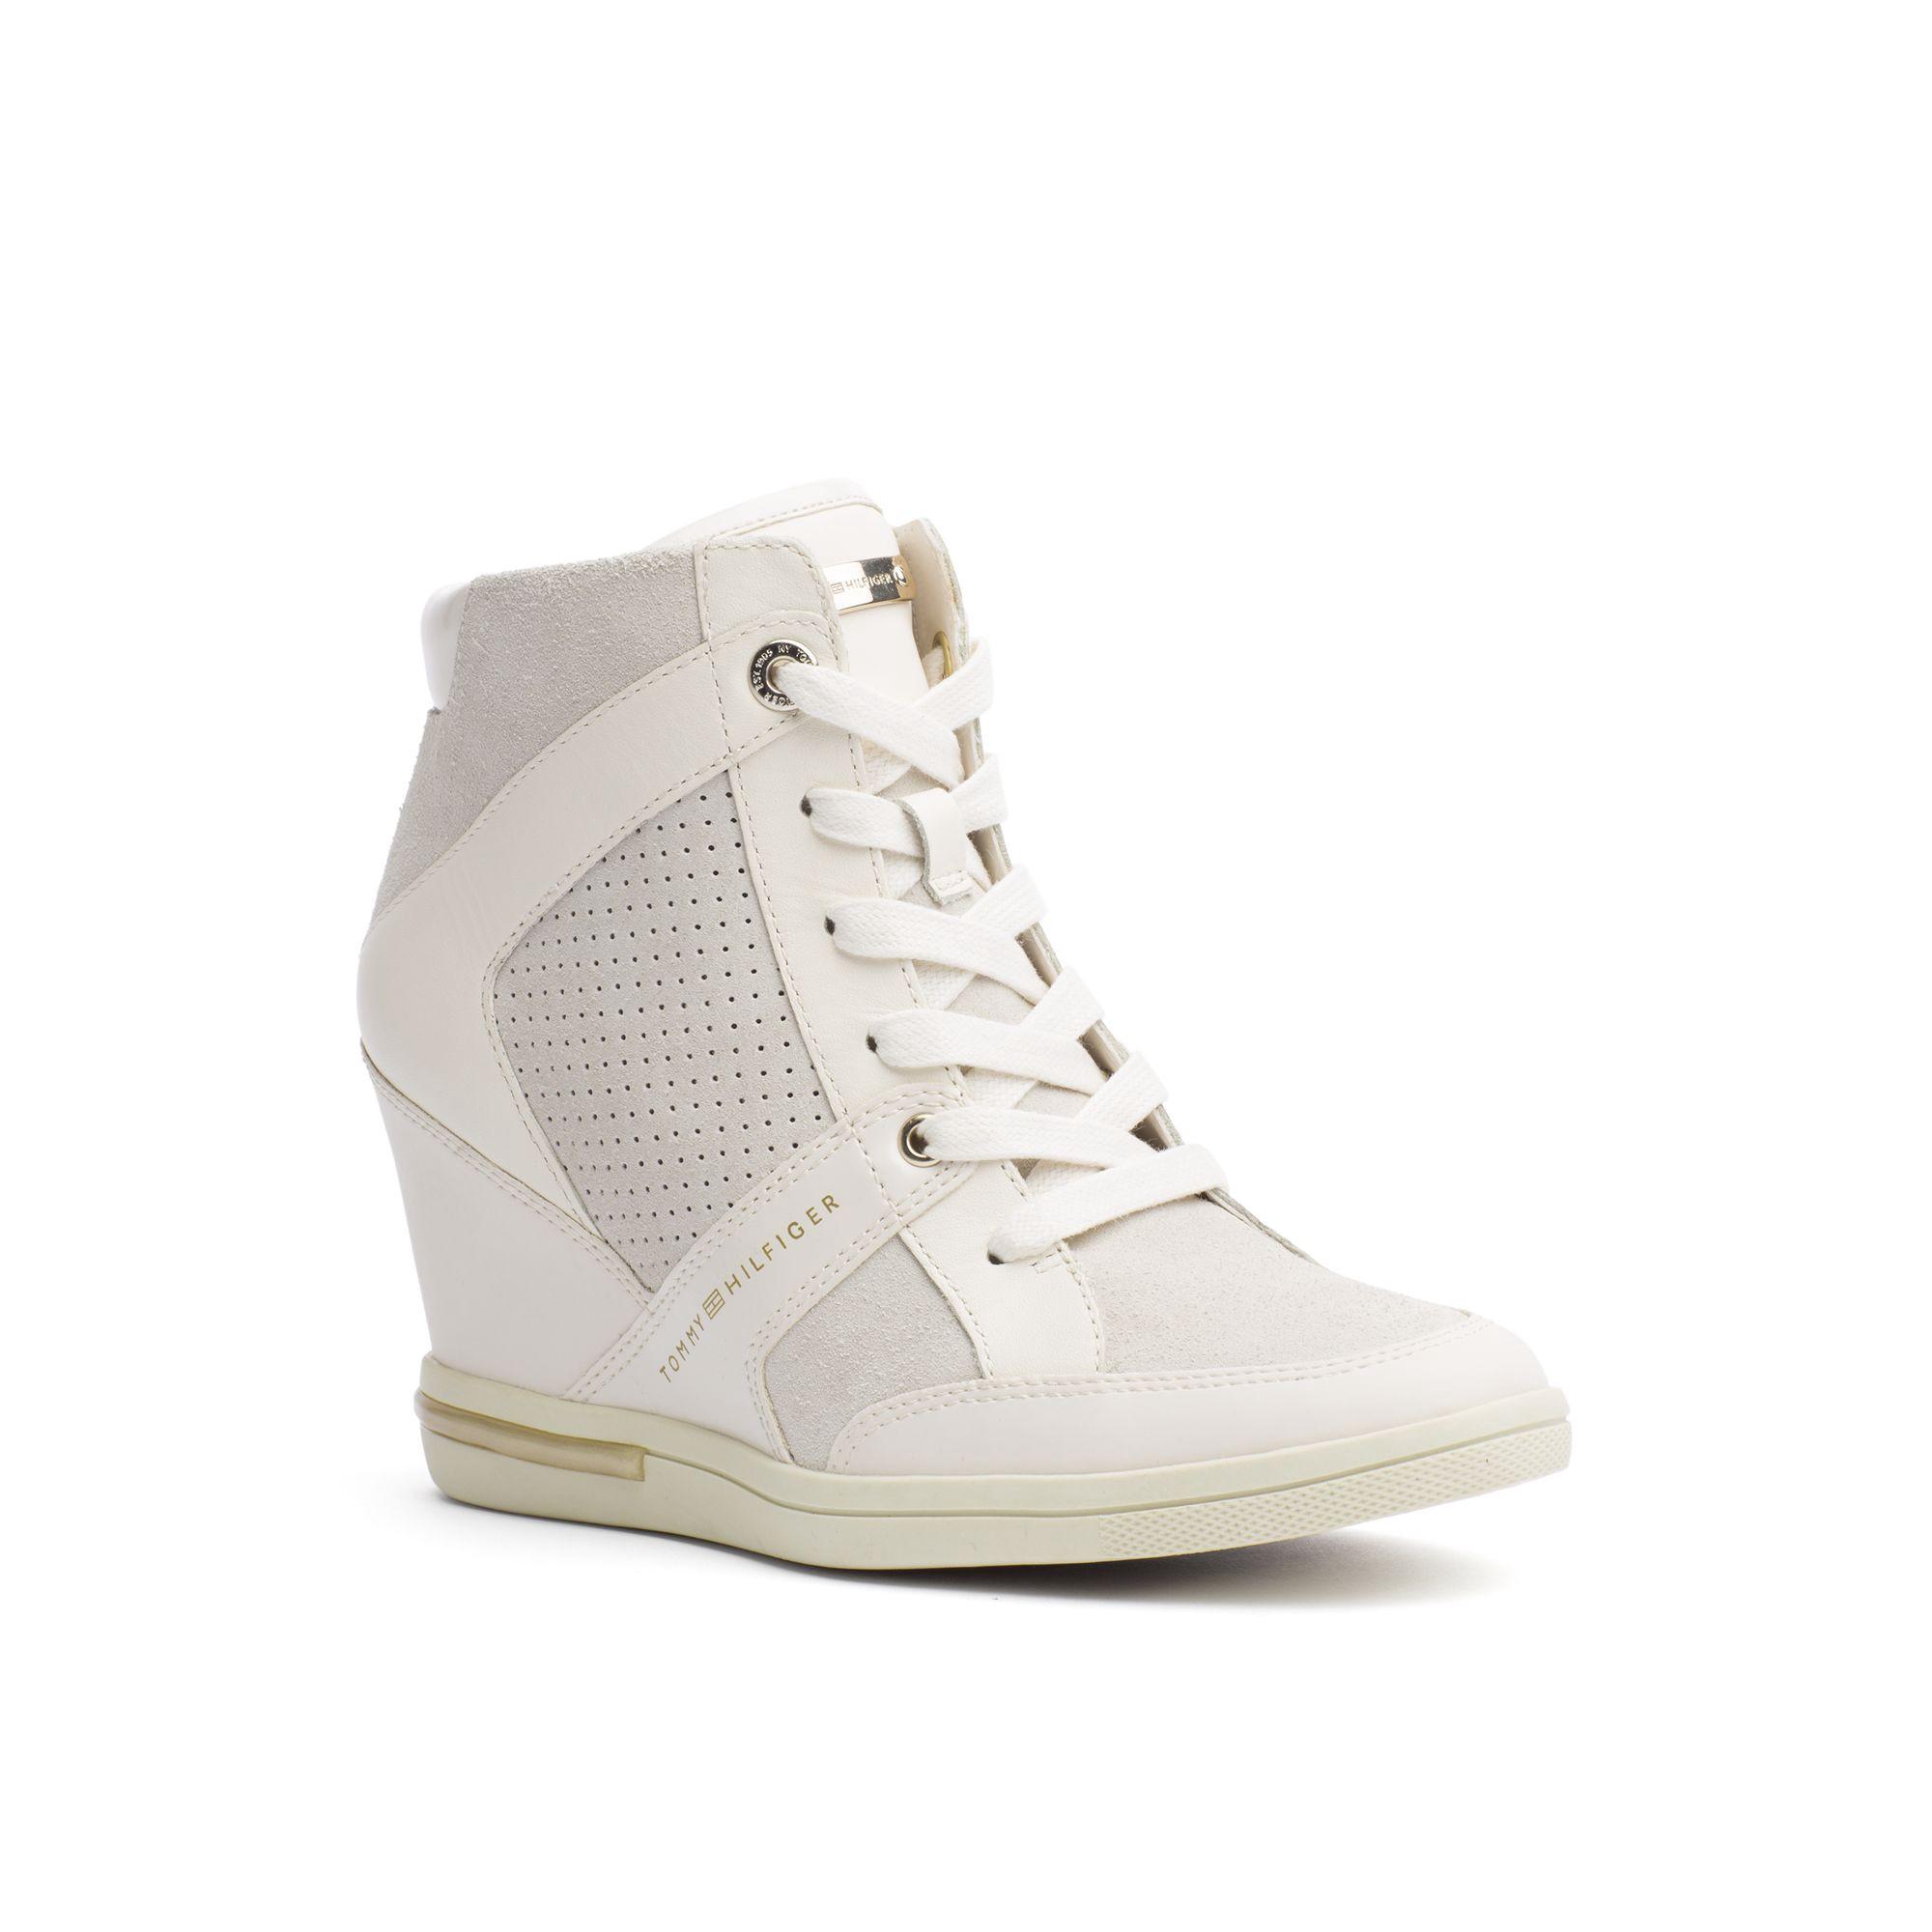 Leather Sneaker Wedge - Whisper White 